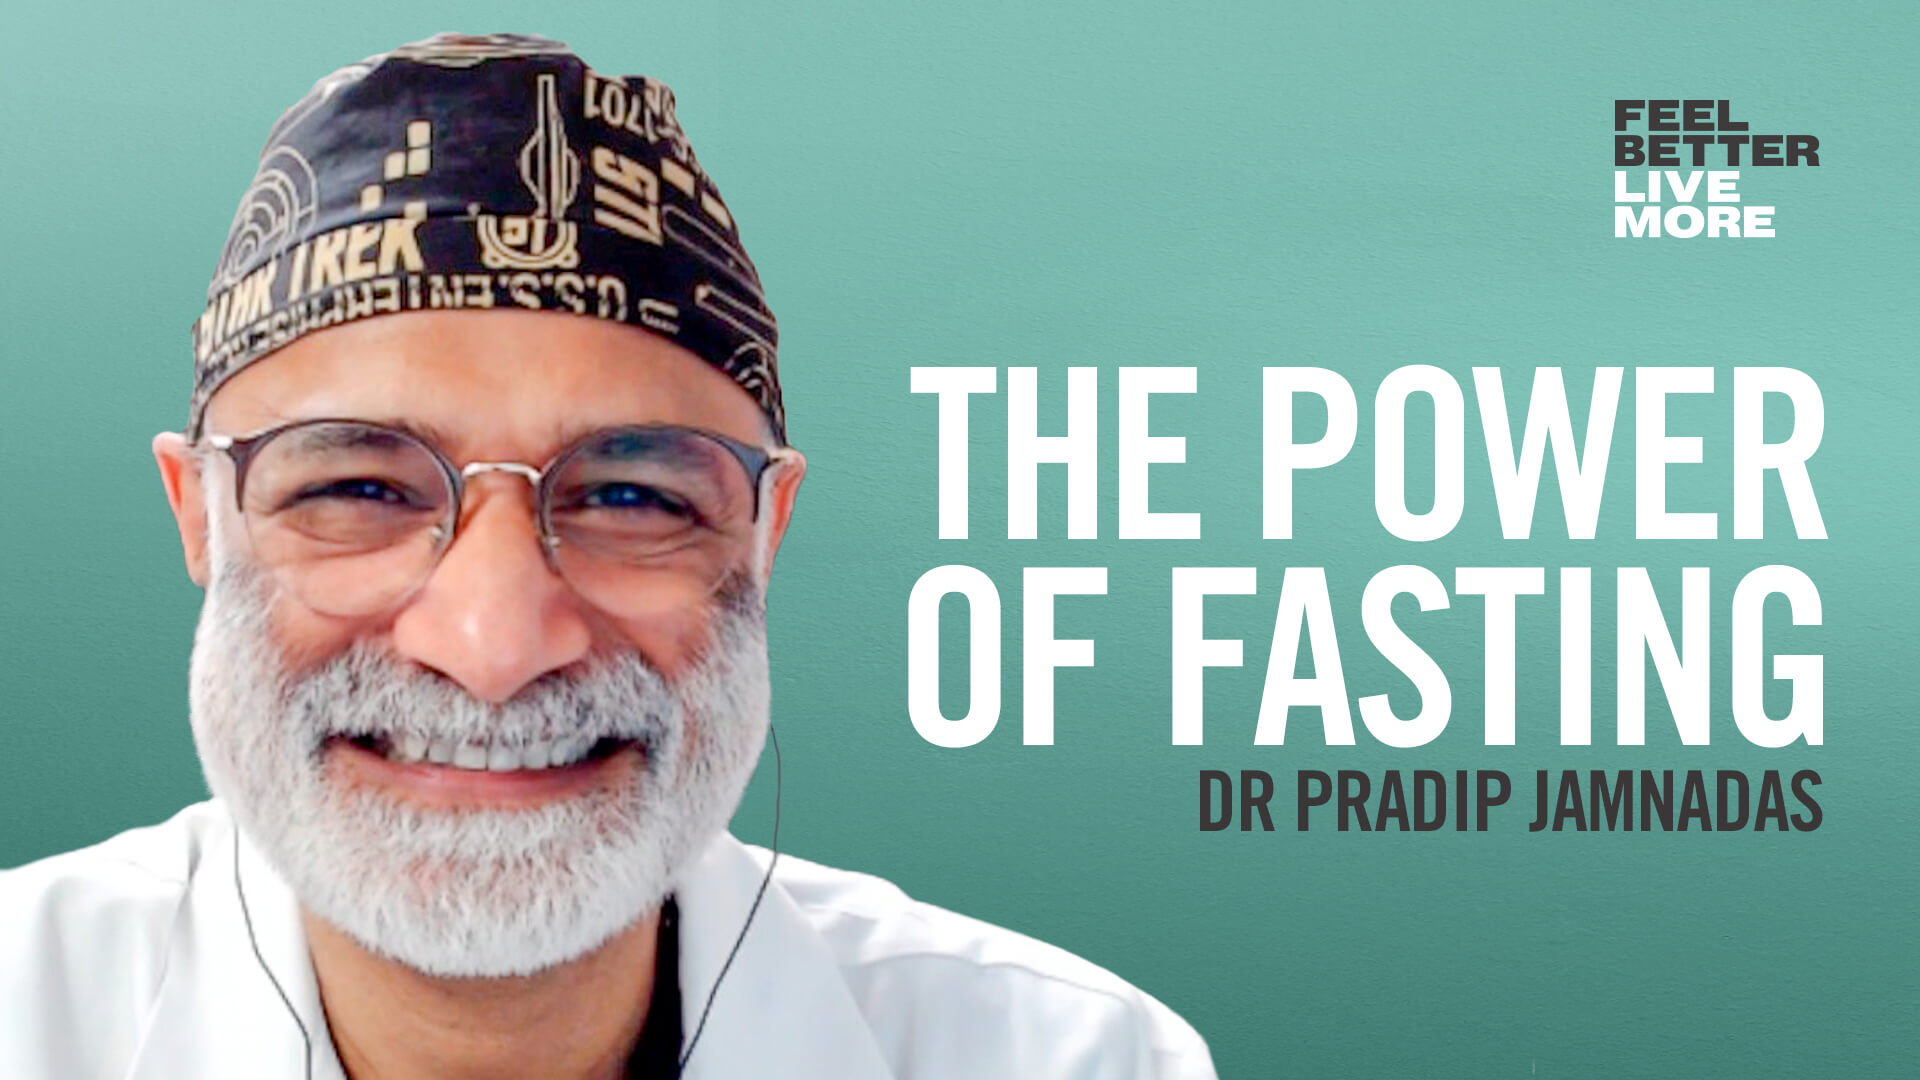 Dr pradip jamnadas fasting program